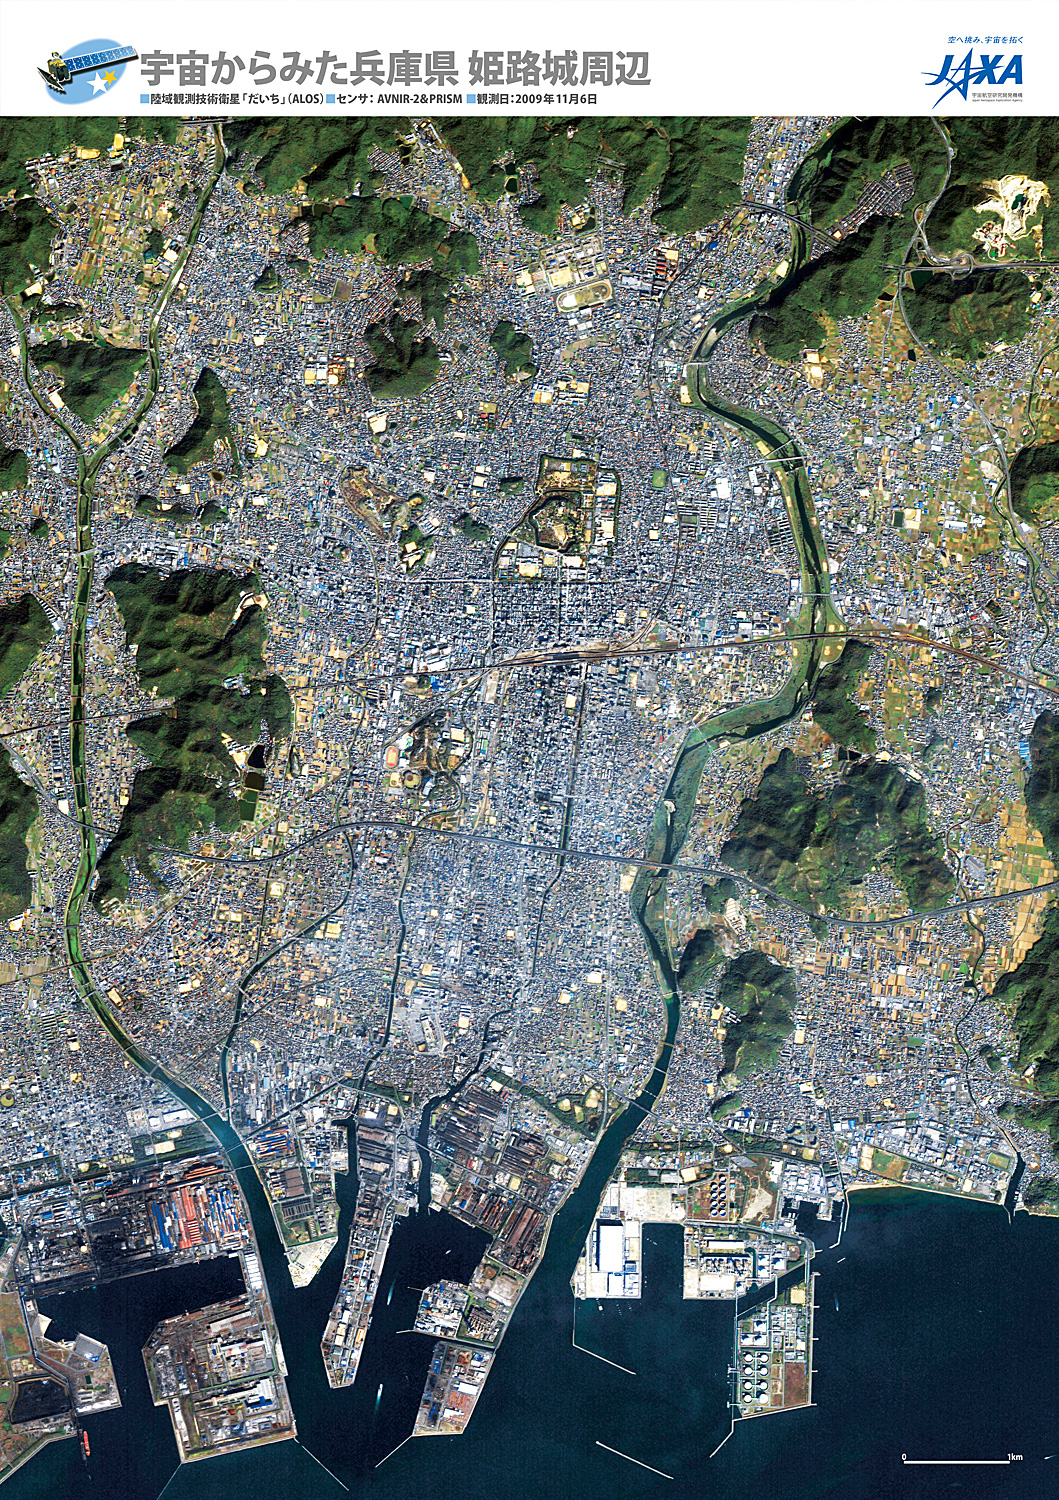 だいちから見た日本の都市 姫路城:衛星画像（ポスター仕上げ）